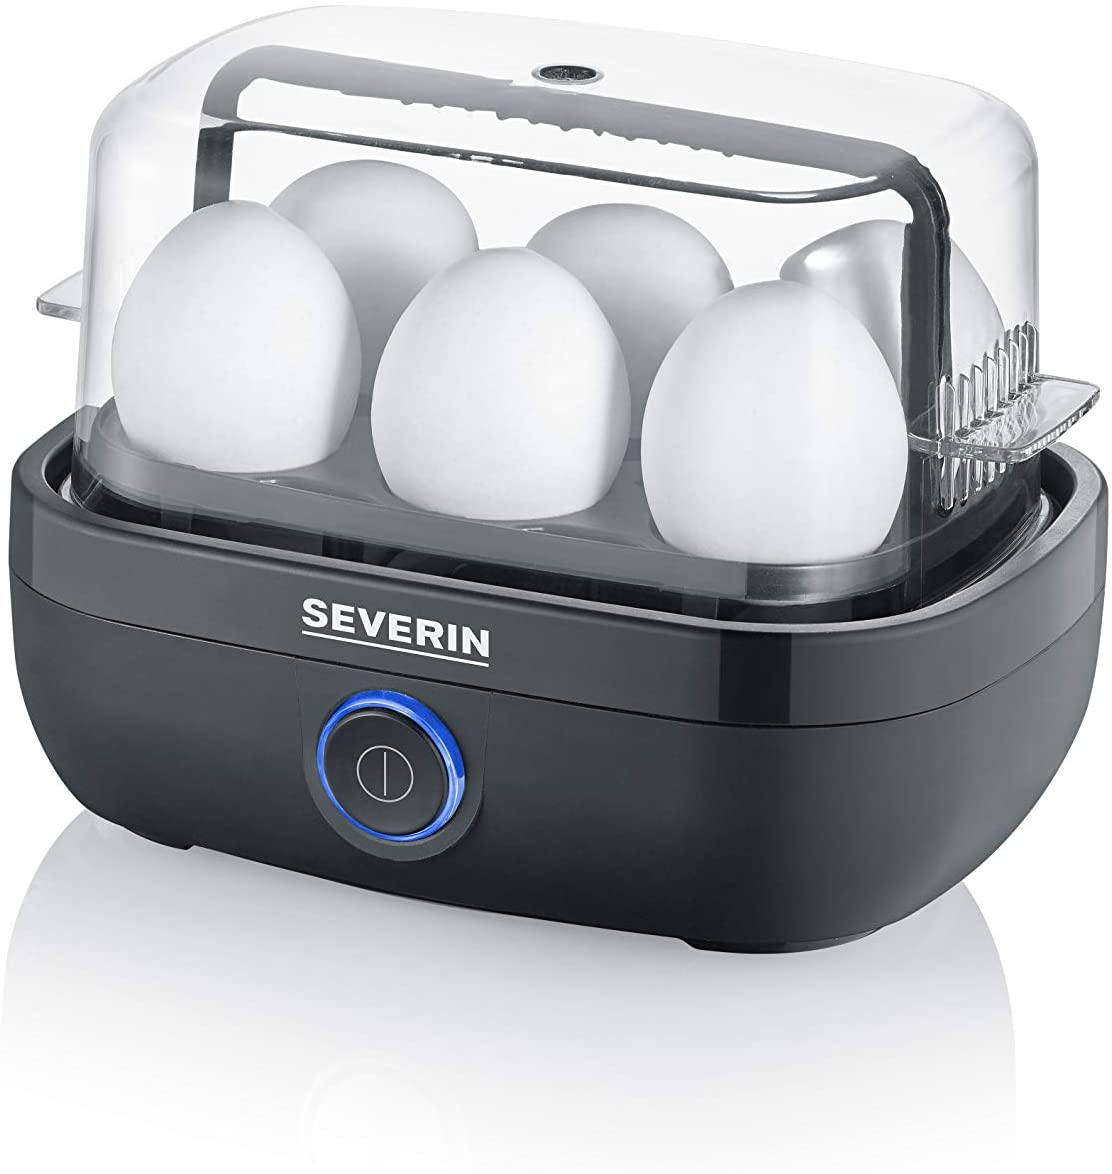 Severin Italia Ek 3165 Egg Boiler